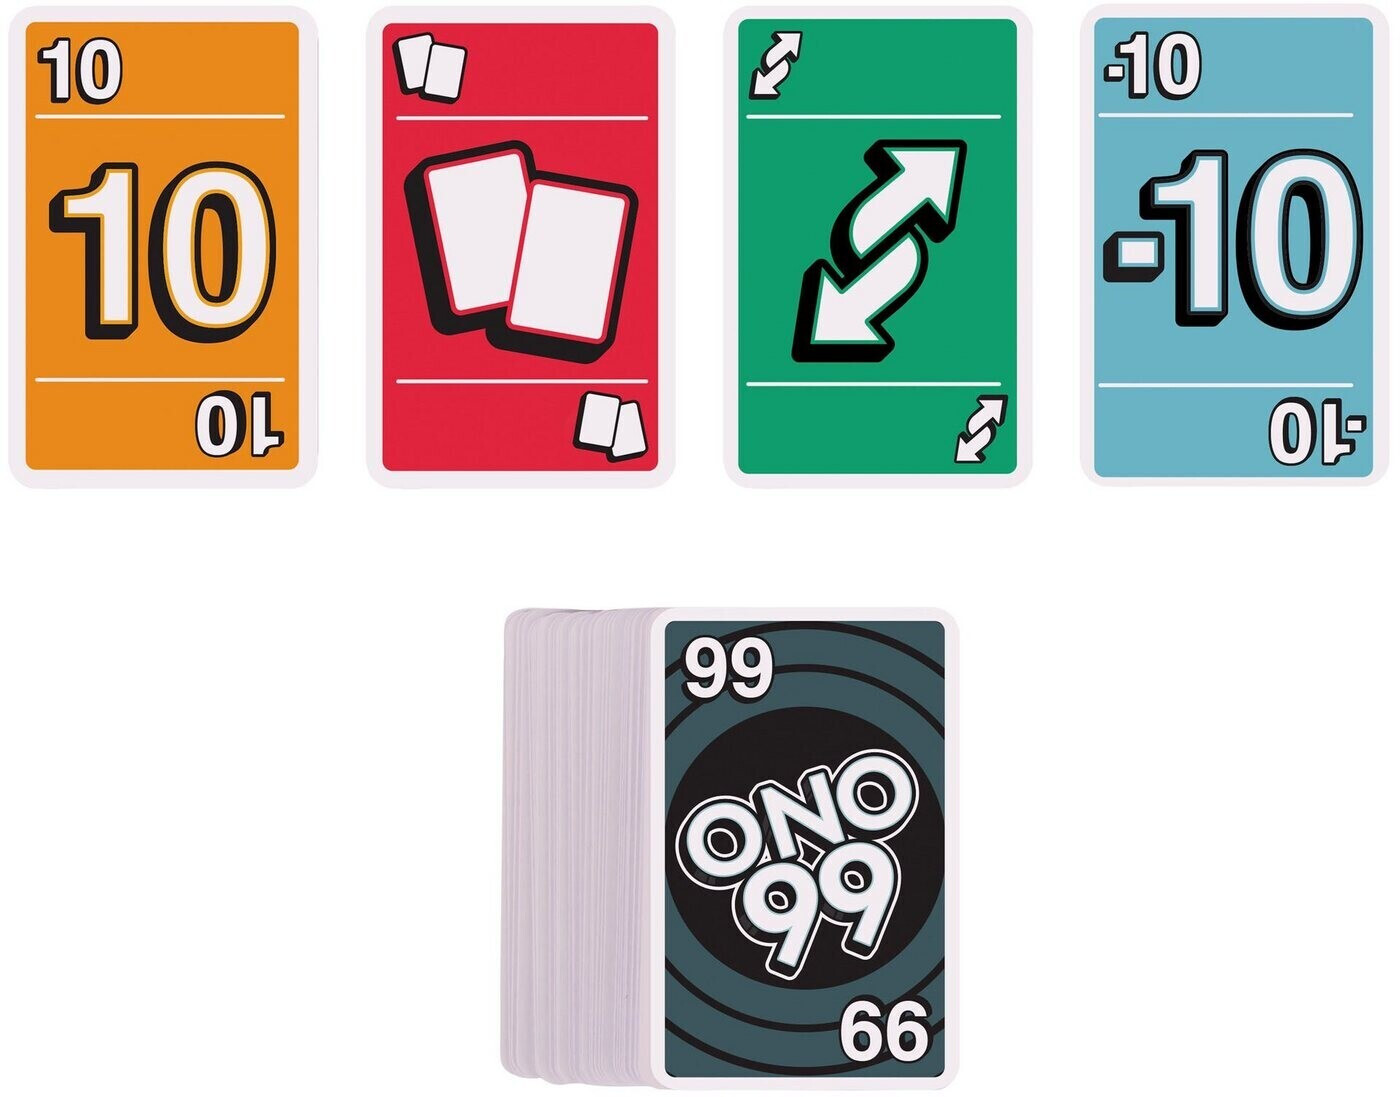 Ono 99 Kartenspiel in Bremen - Huchting, Gesellschaftsspiele günstig  kaufen, gebraucht oder neu